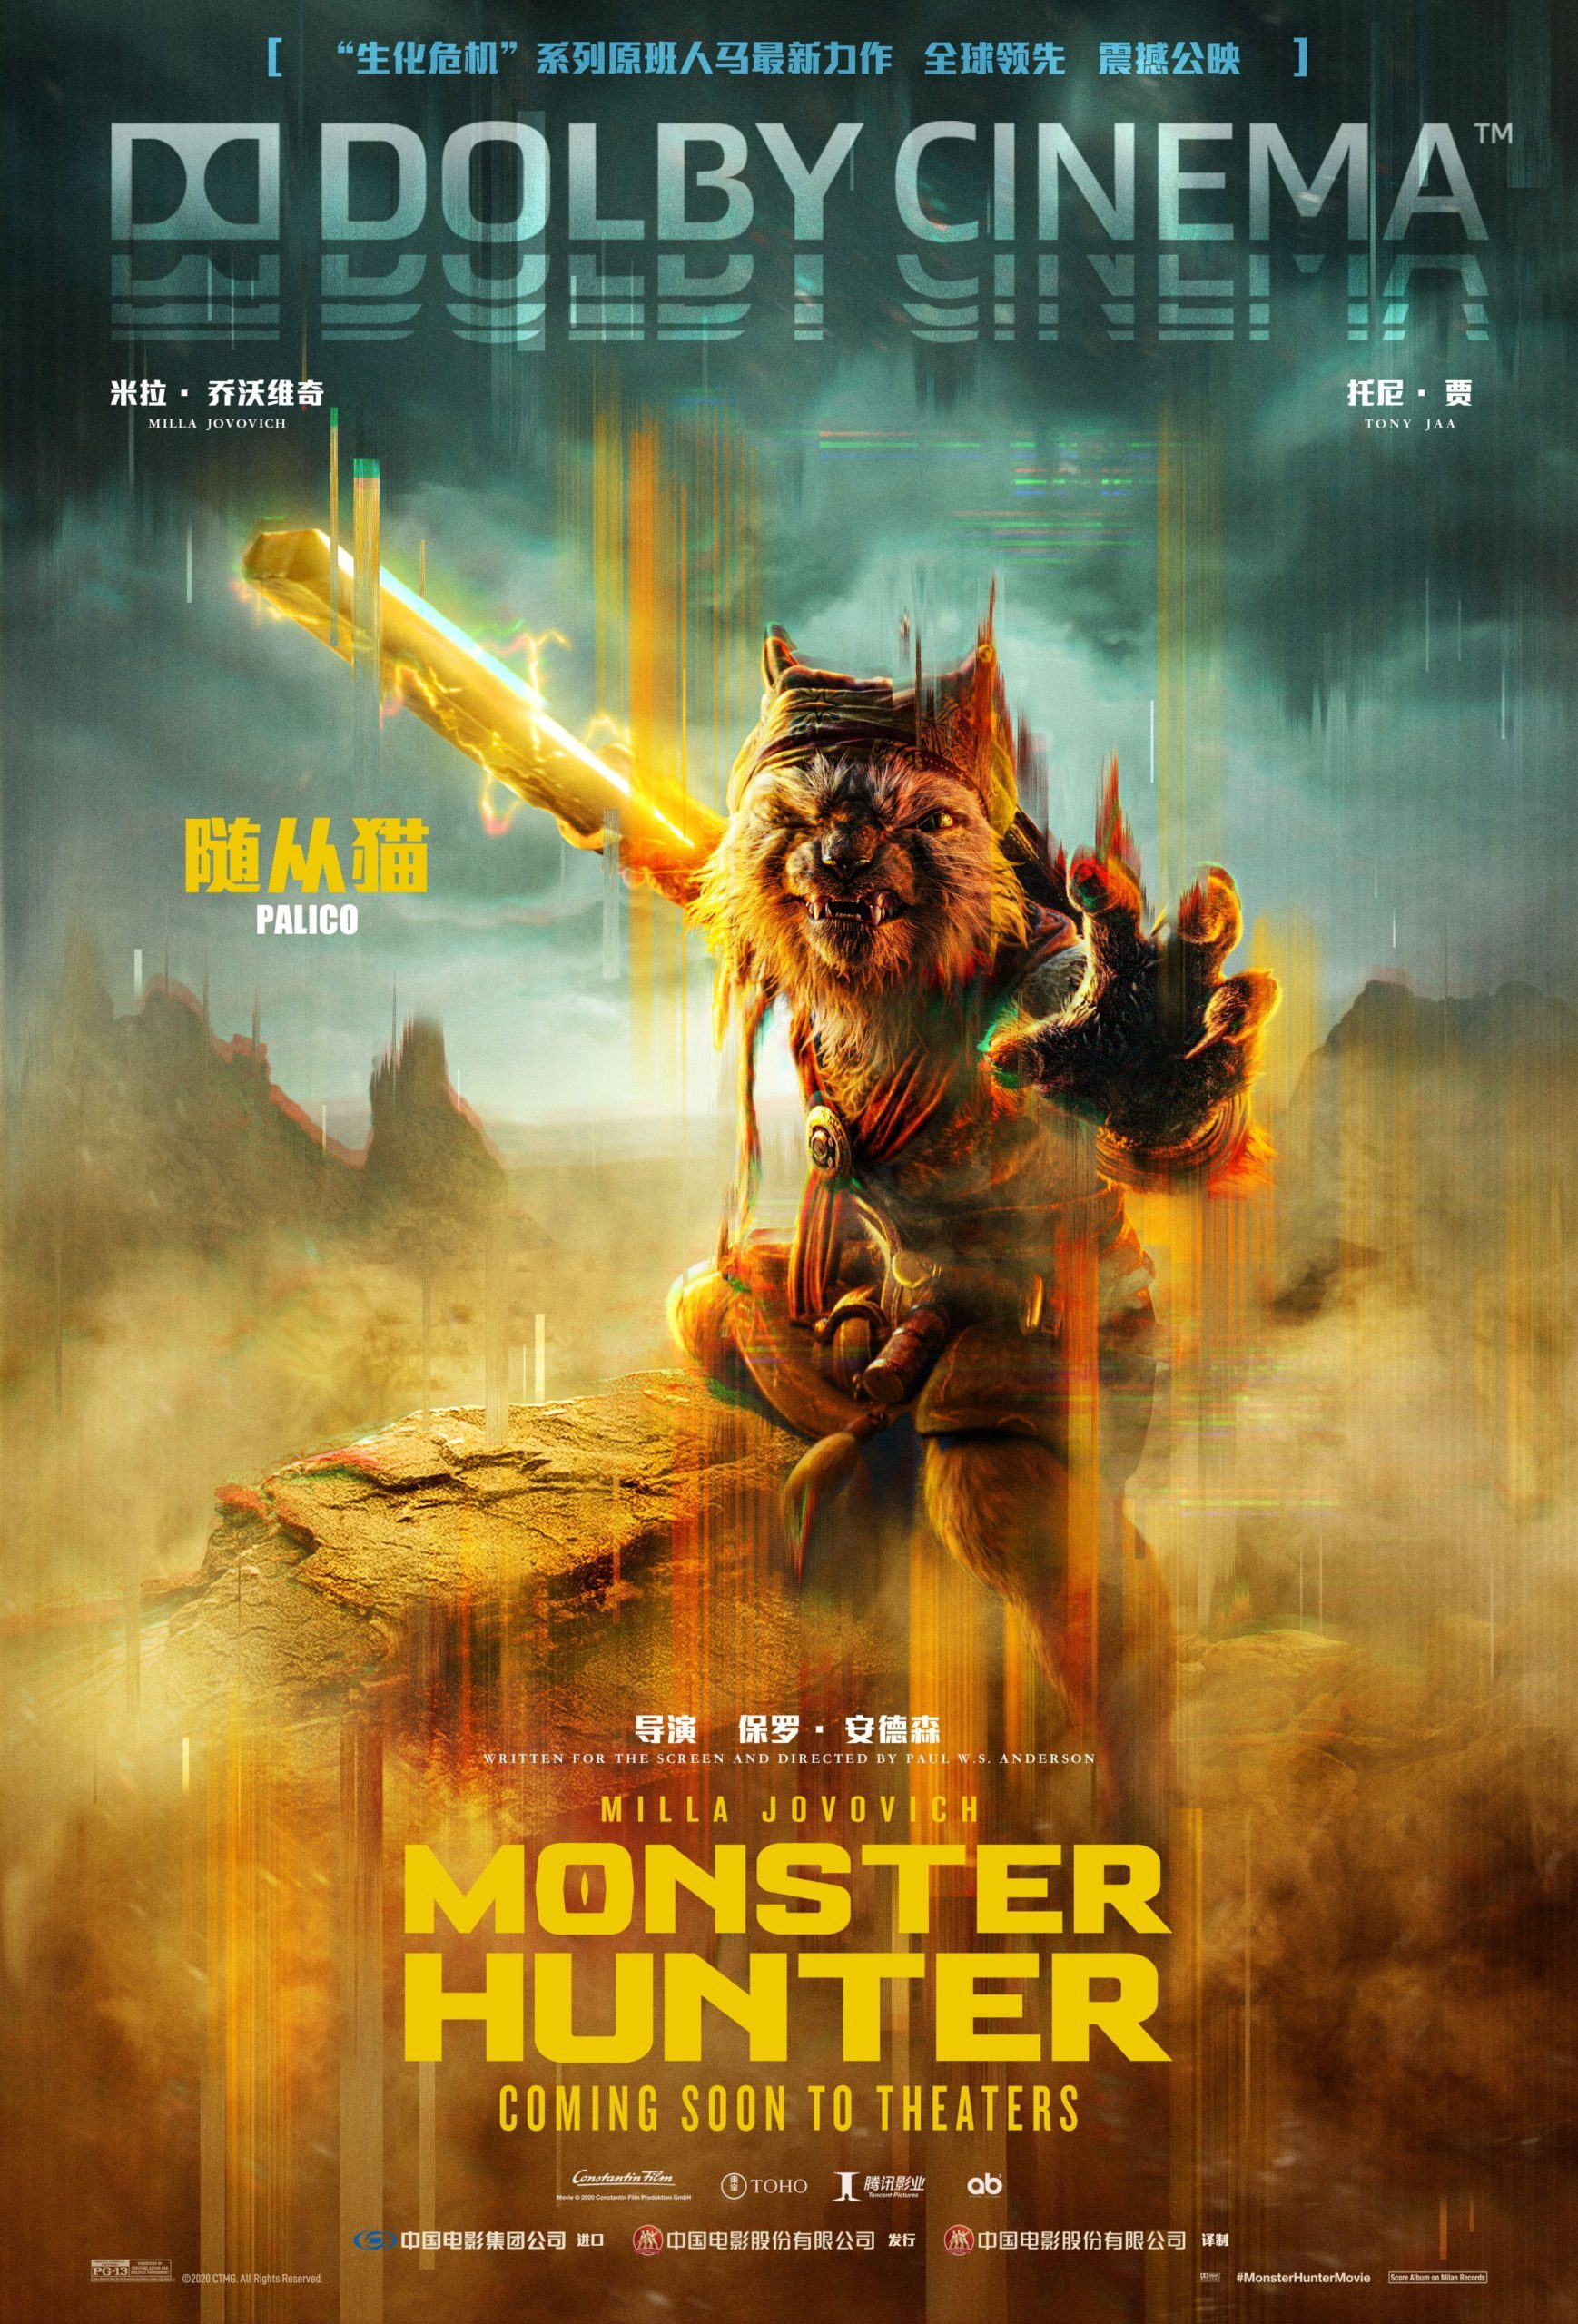 Milla Jovovich Cast In Monster Hunter Movie Adaptation